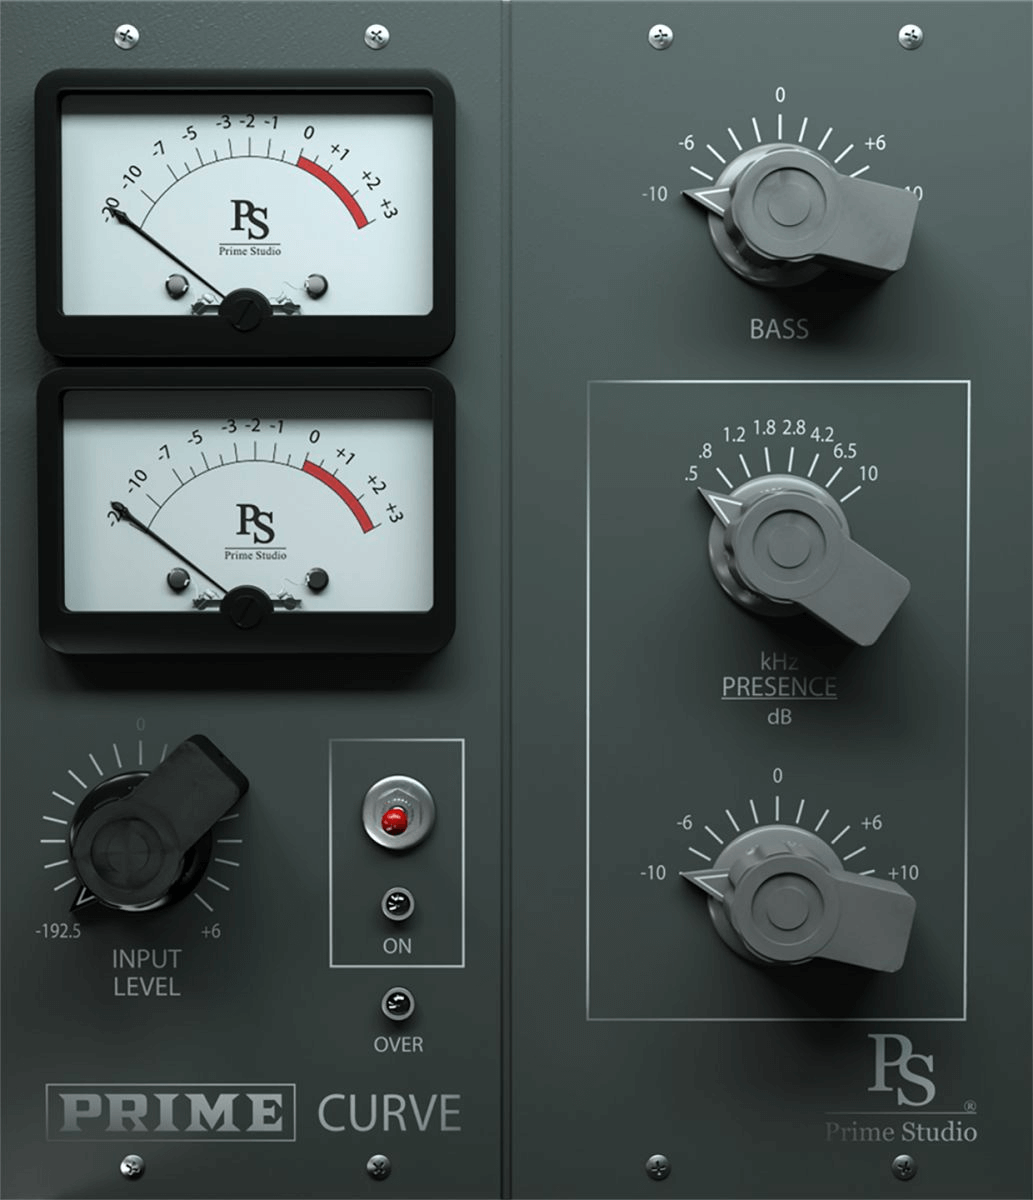 Prime Studio Prime Curve